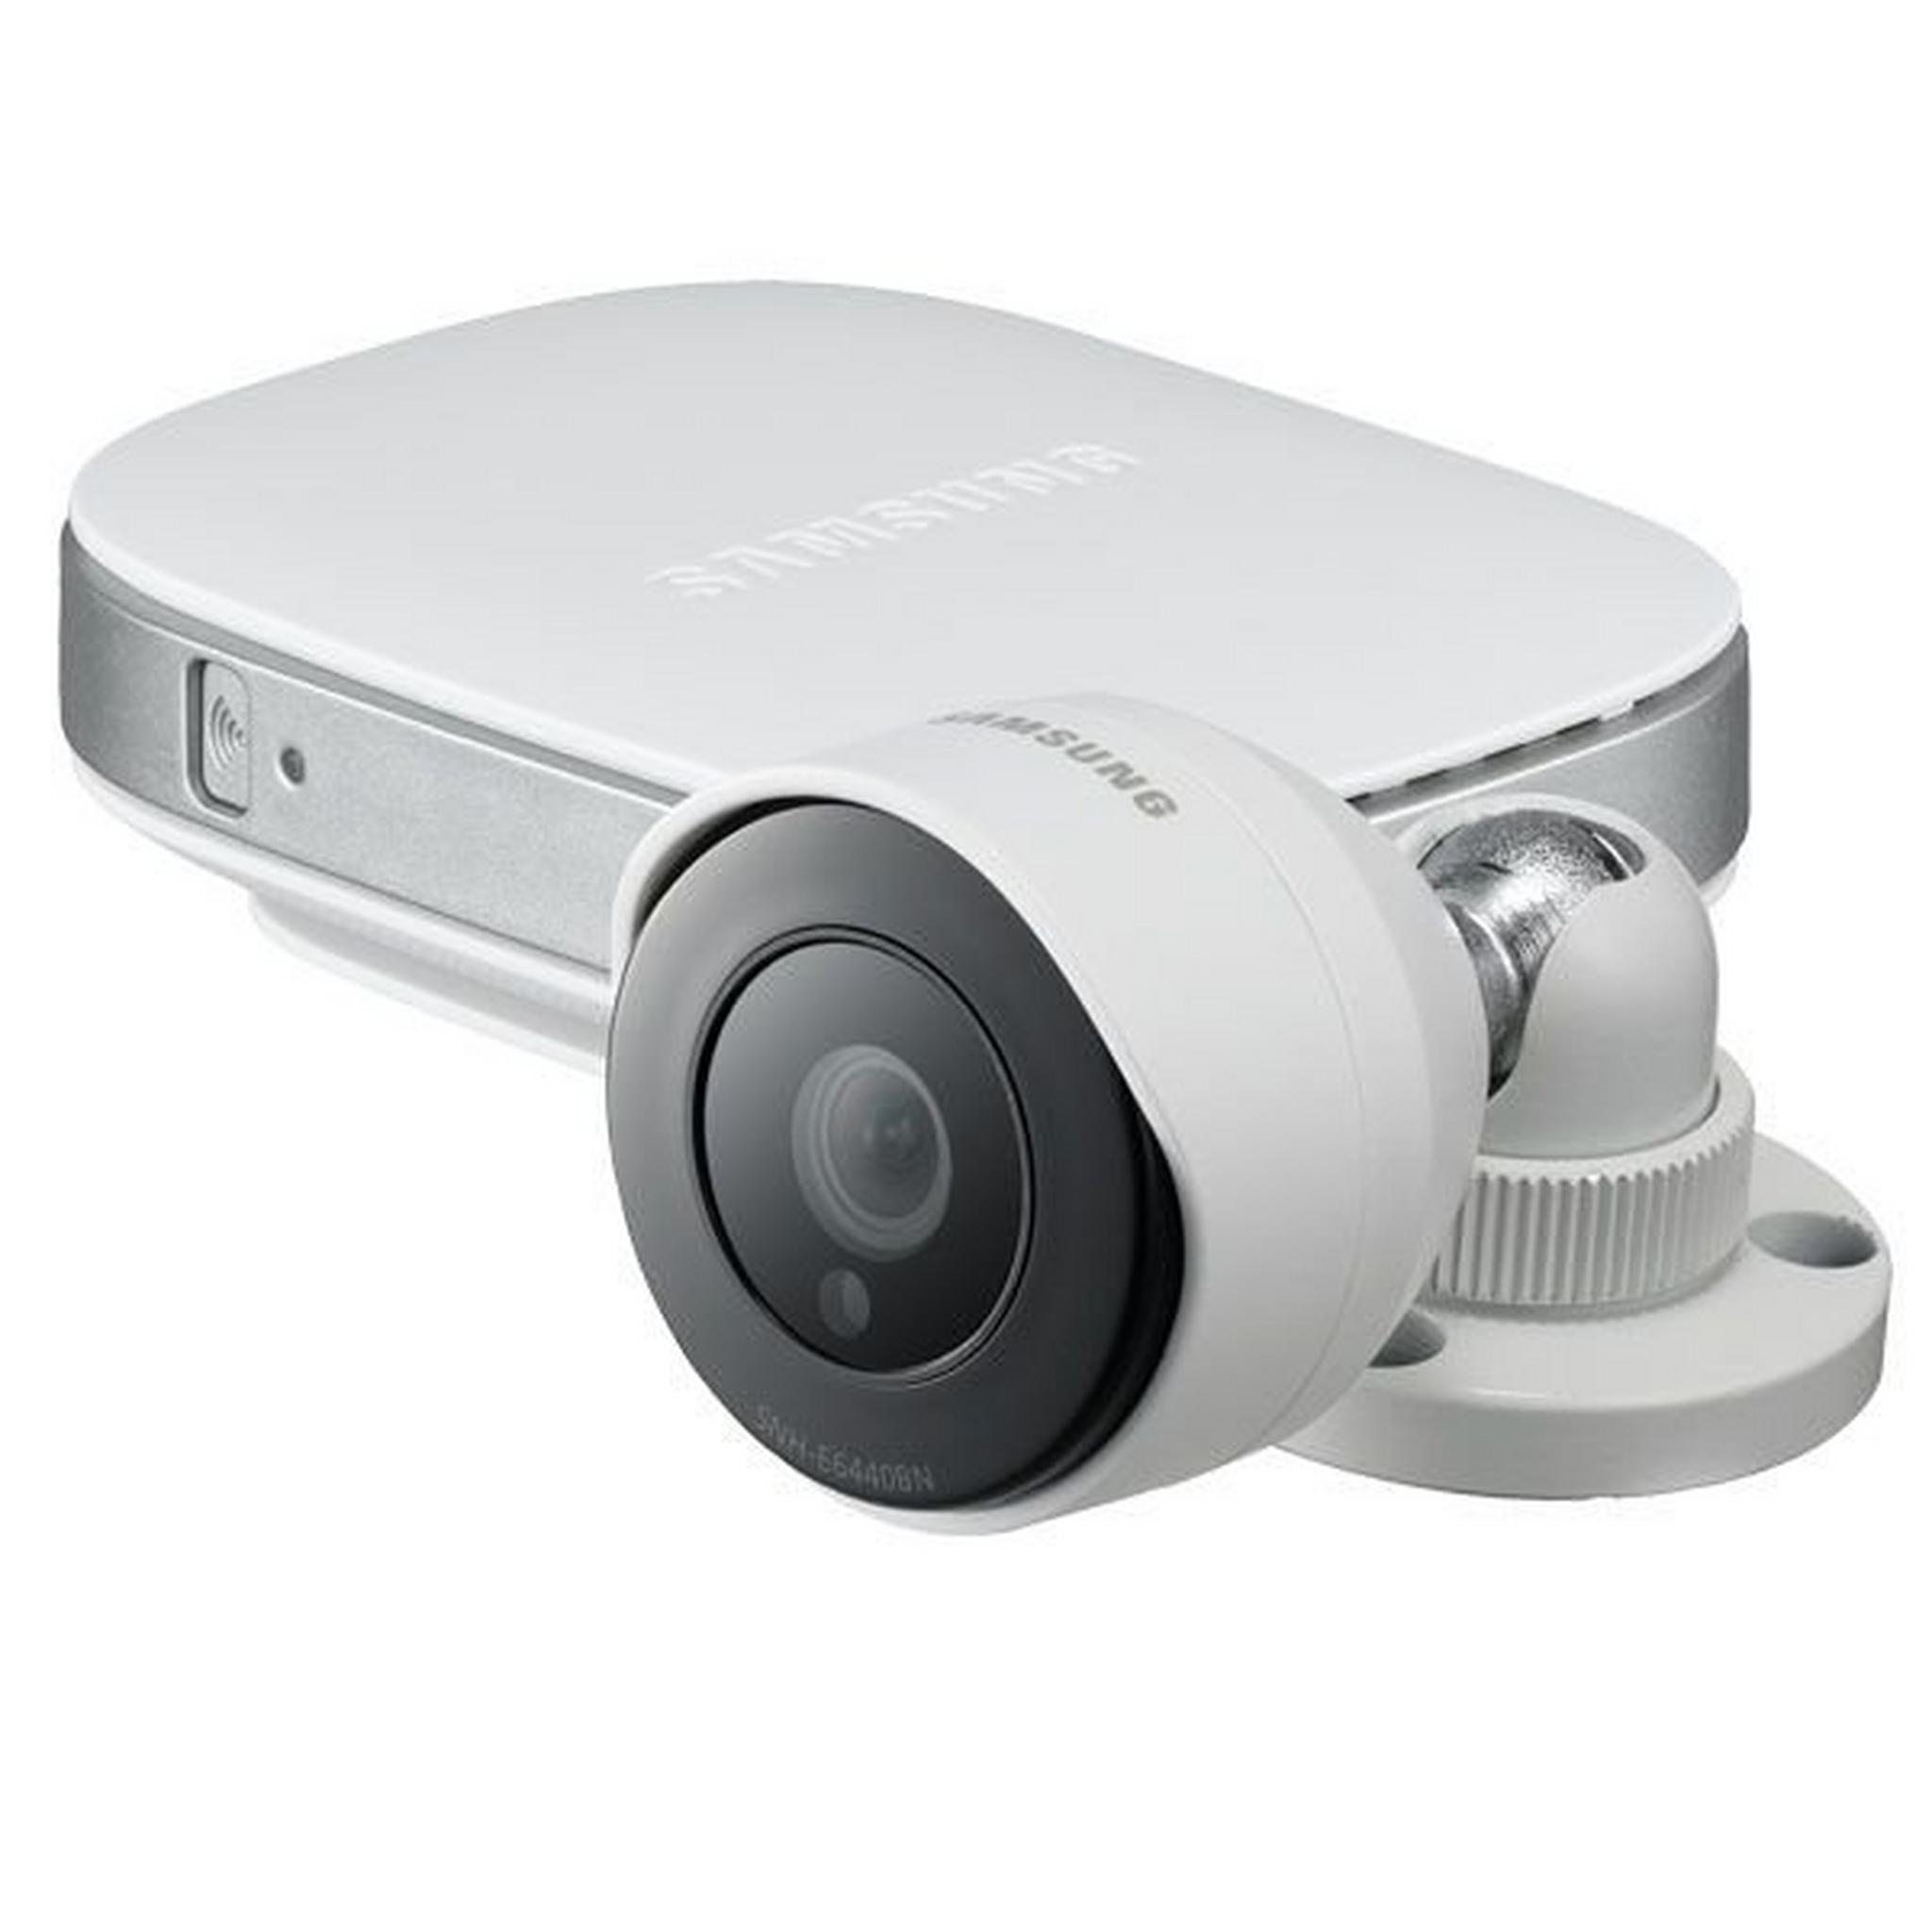 كاميرا المراقبة الذكية عالية الوضوح بتقنية واي فاي من سامسونج - أبيض (SNH-E6440BN)